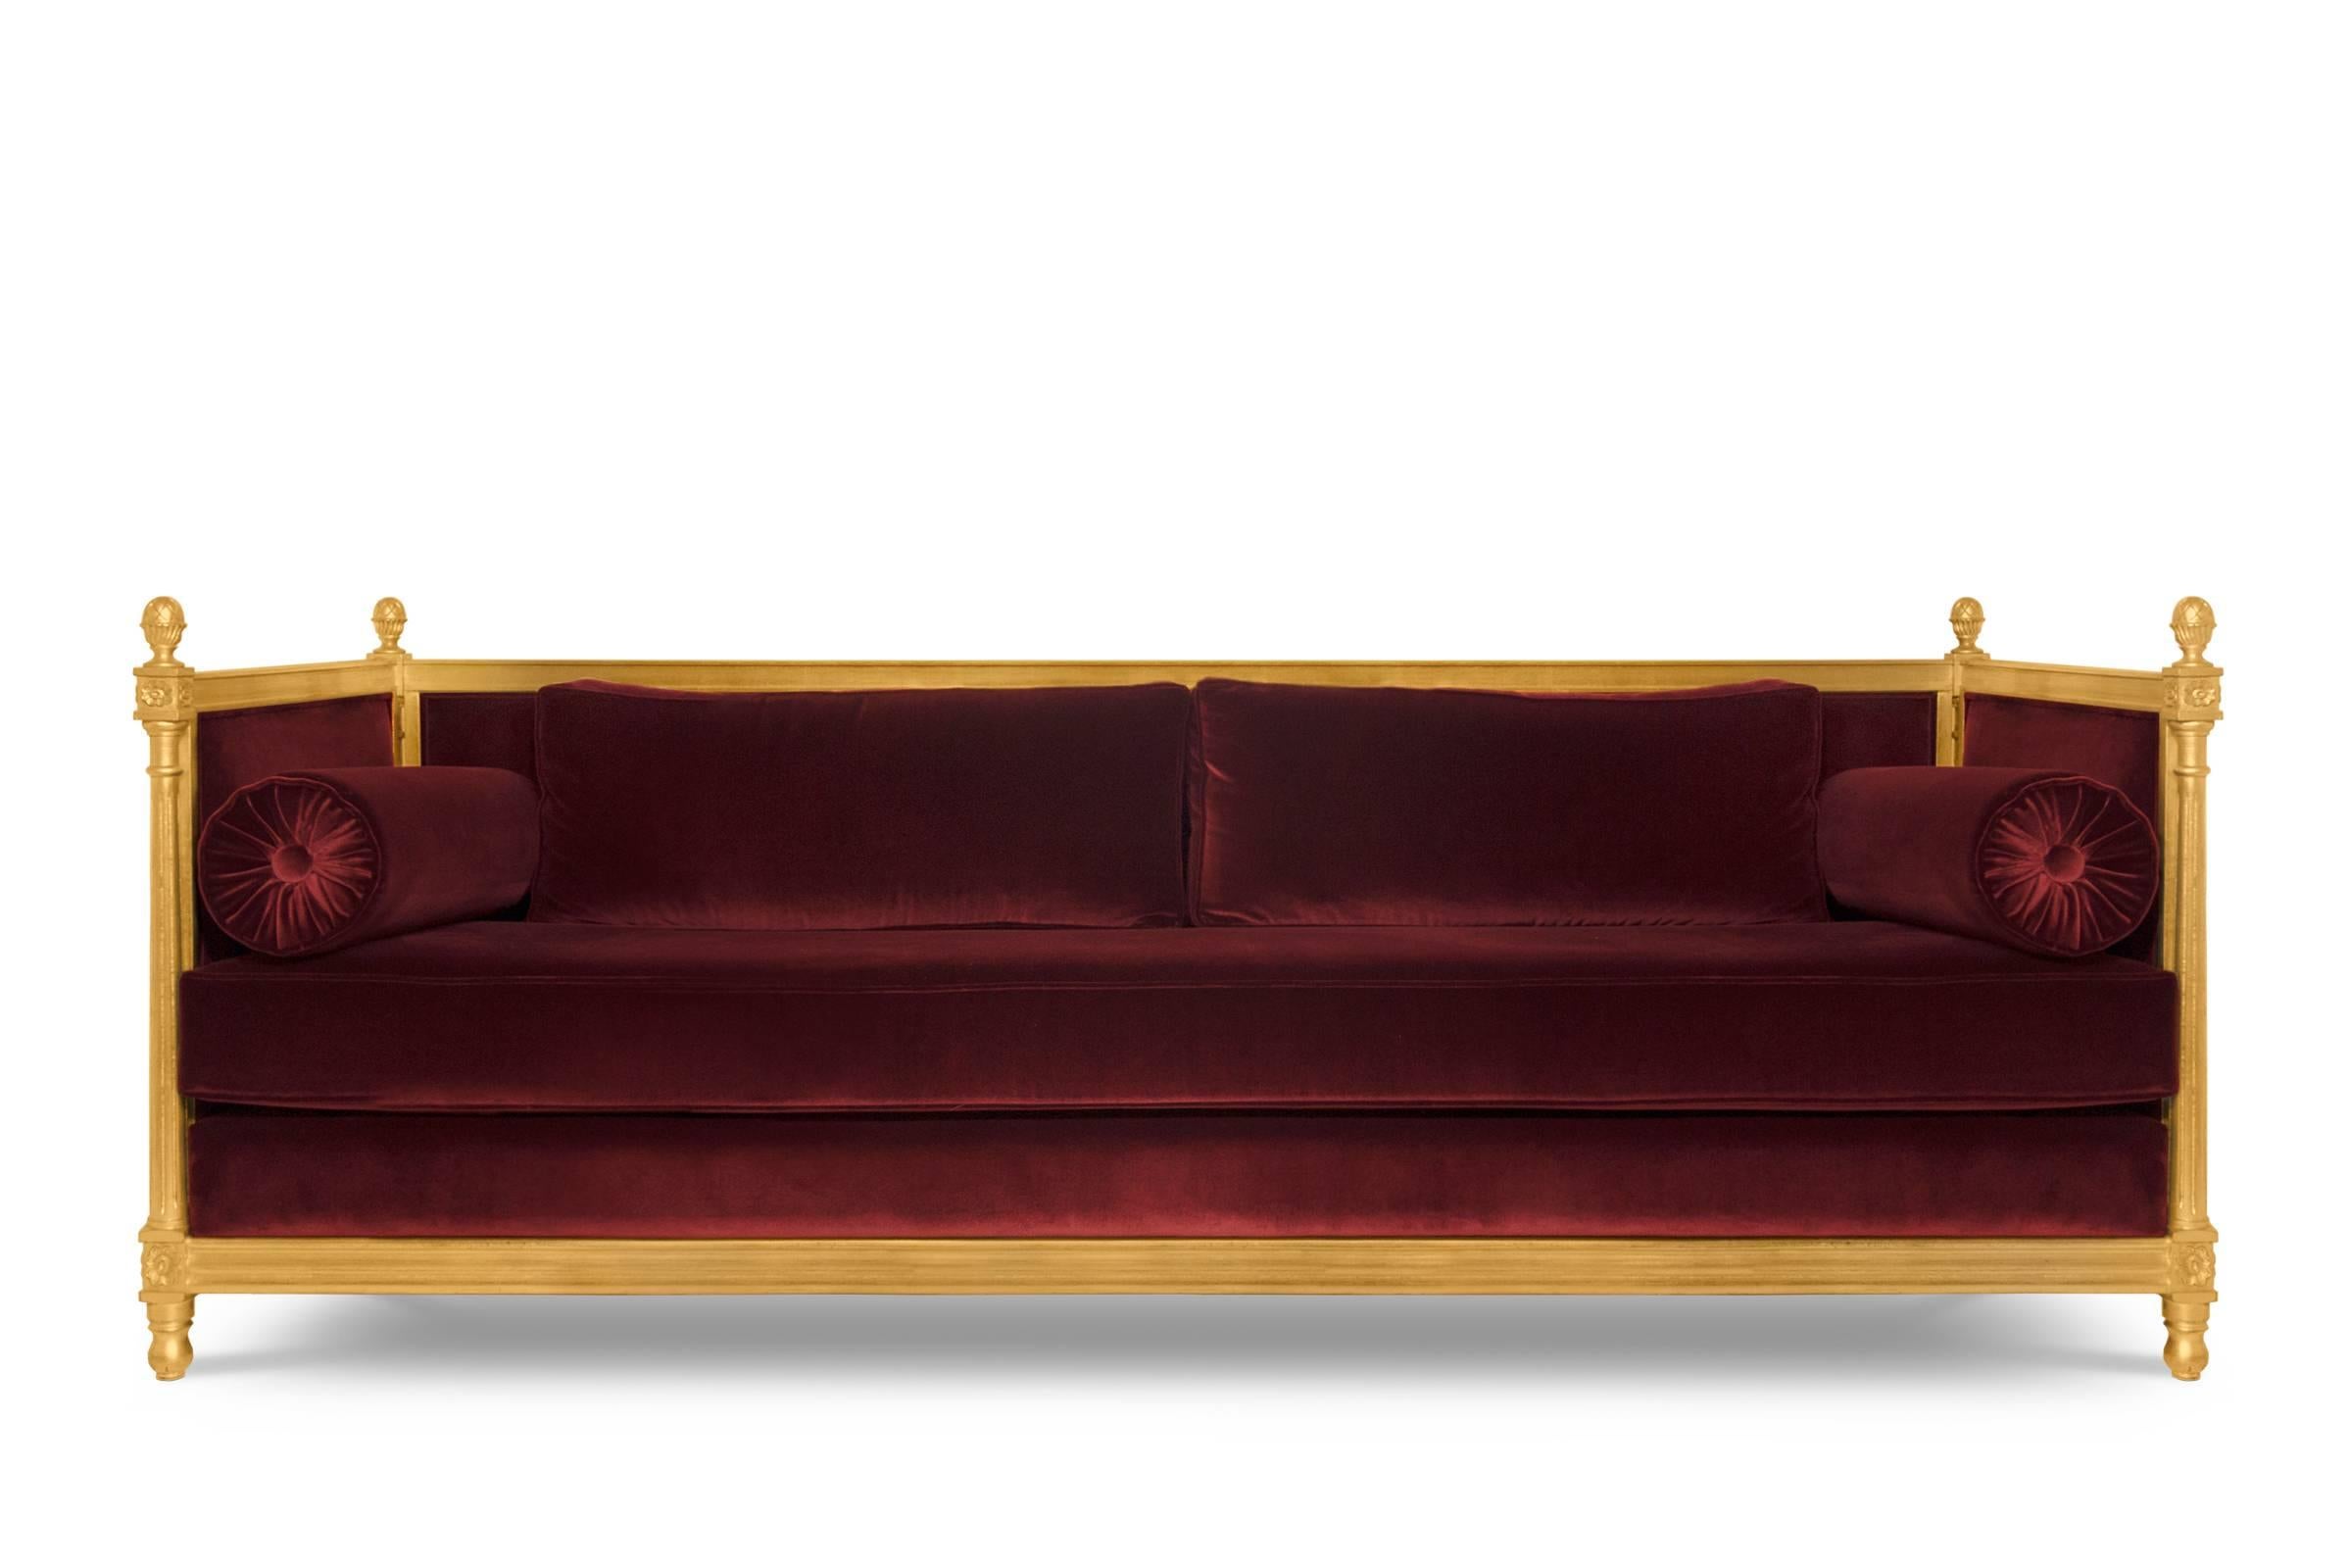 Sofa neues Schloss mit Baumwollsamtstoff und
gealtertes Blattgold mit Glanzlackierung. Verfügbar
in den Farben Rot, Kastanienbraun, Grün oder Schwarz.
